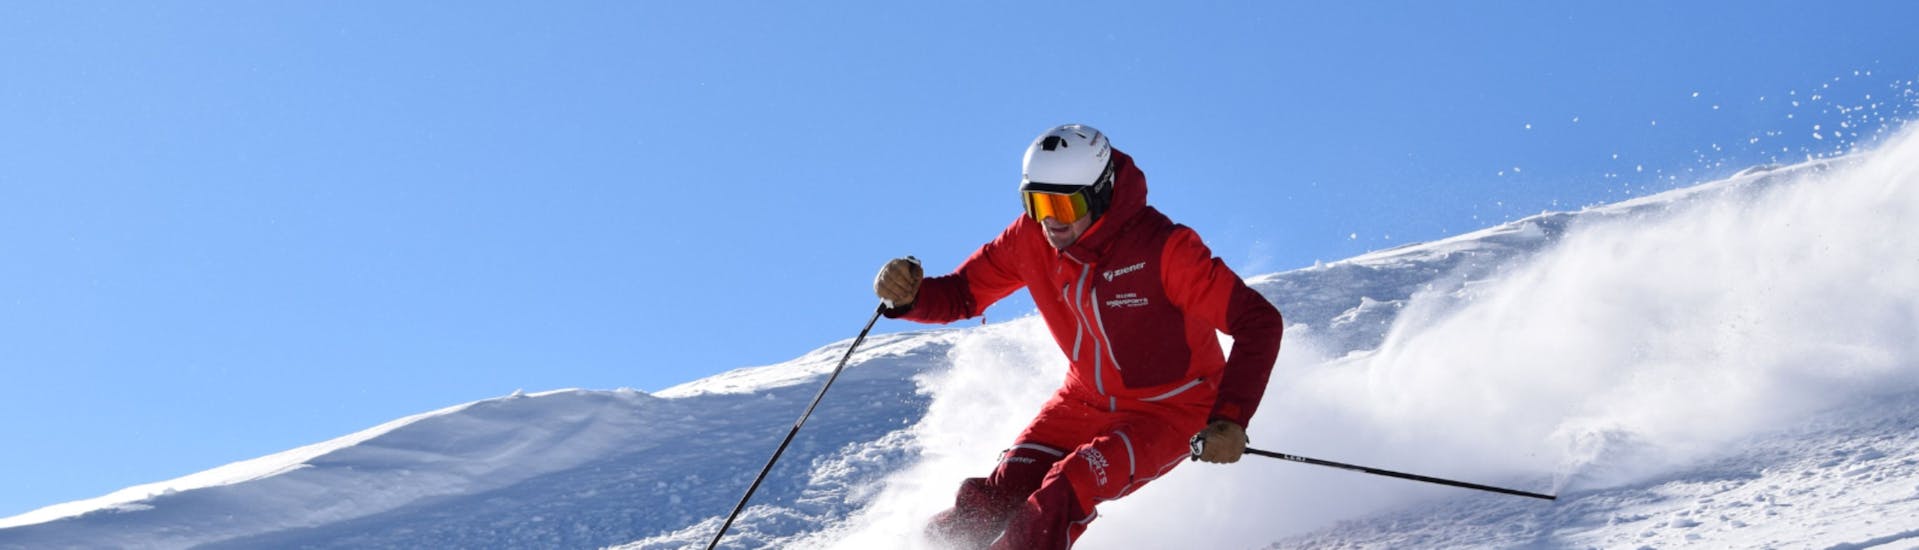 Skilessen voor volwassenen voor Skiërs met Ervaring.